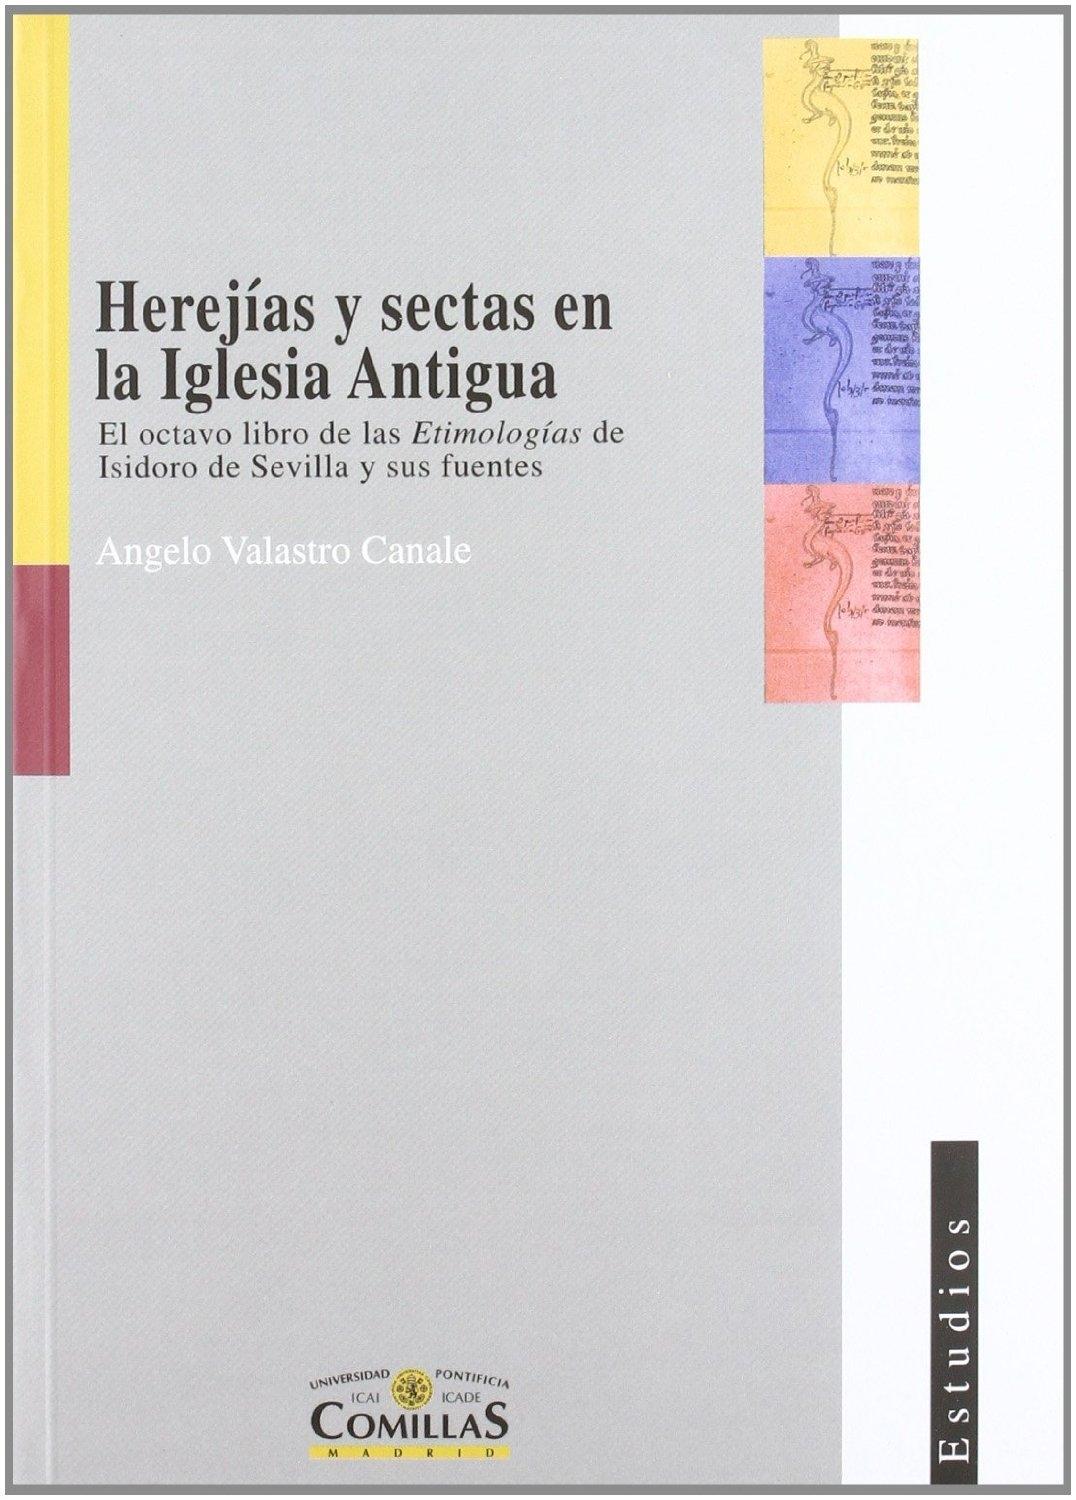 Herejías y sectas en la Iglesia Antigua "El octavo libro de las Etimologías de Isidoro de Sevilla...". 